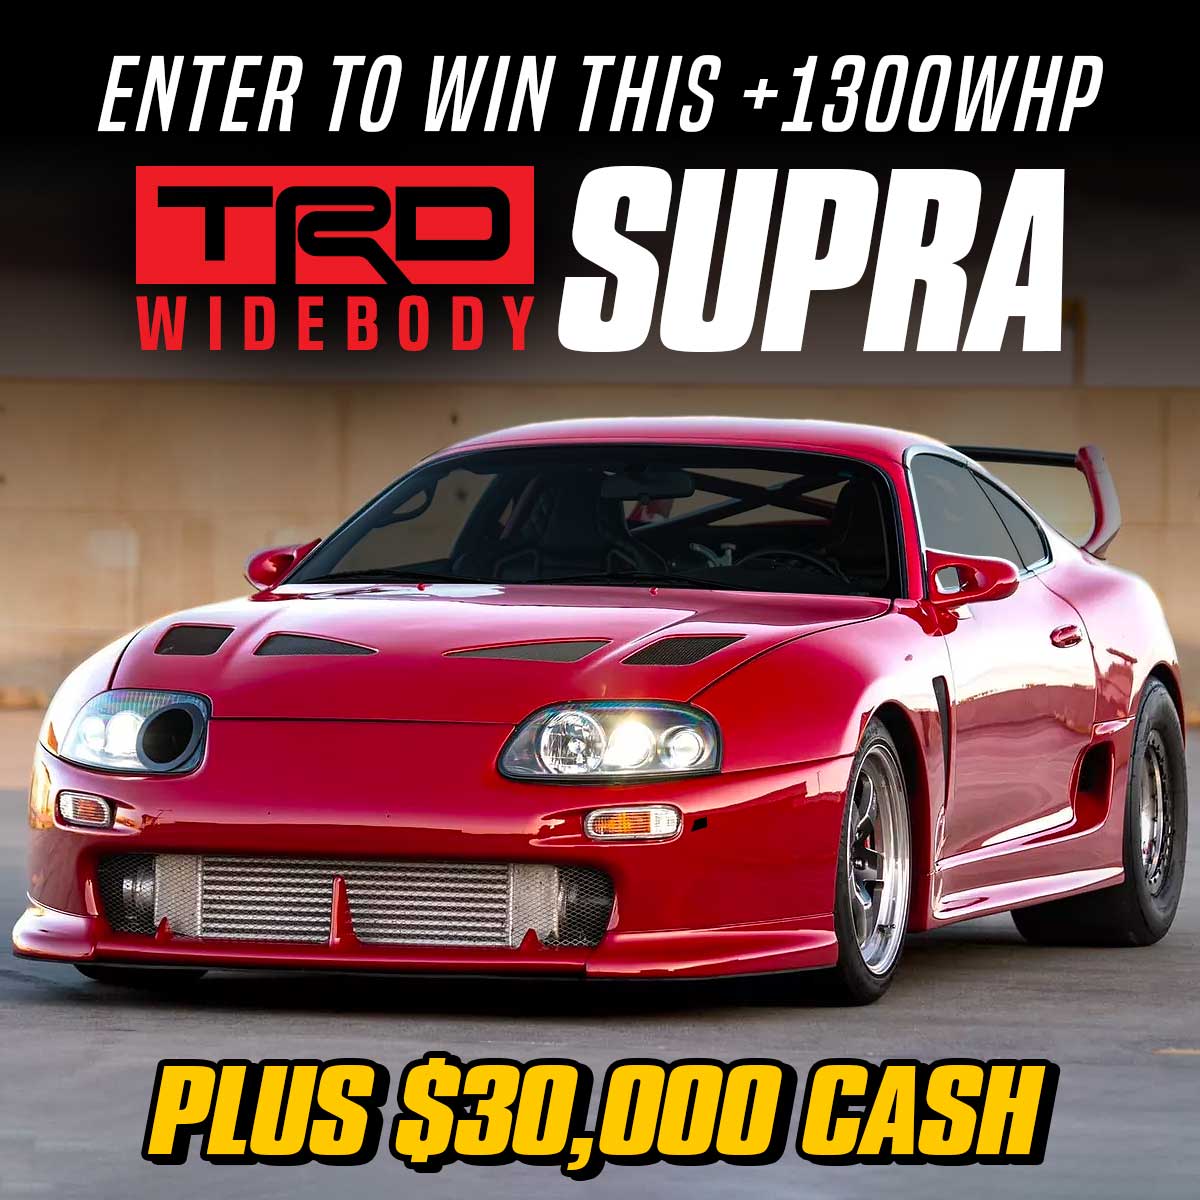 Win this TRD Widebody MKIV Supra plus $0,000